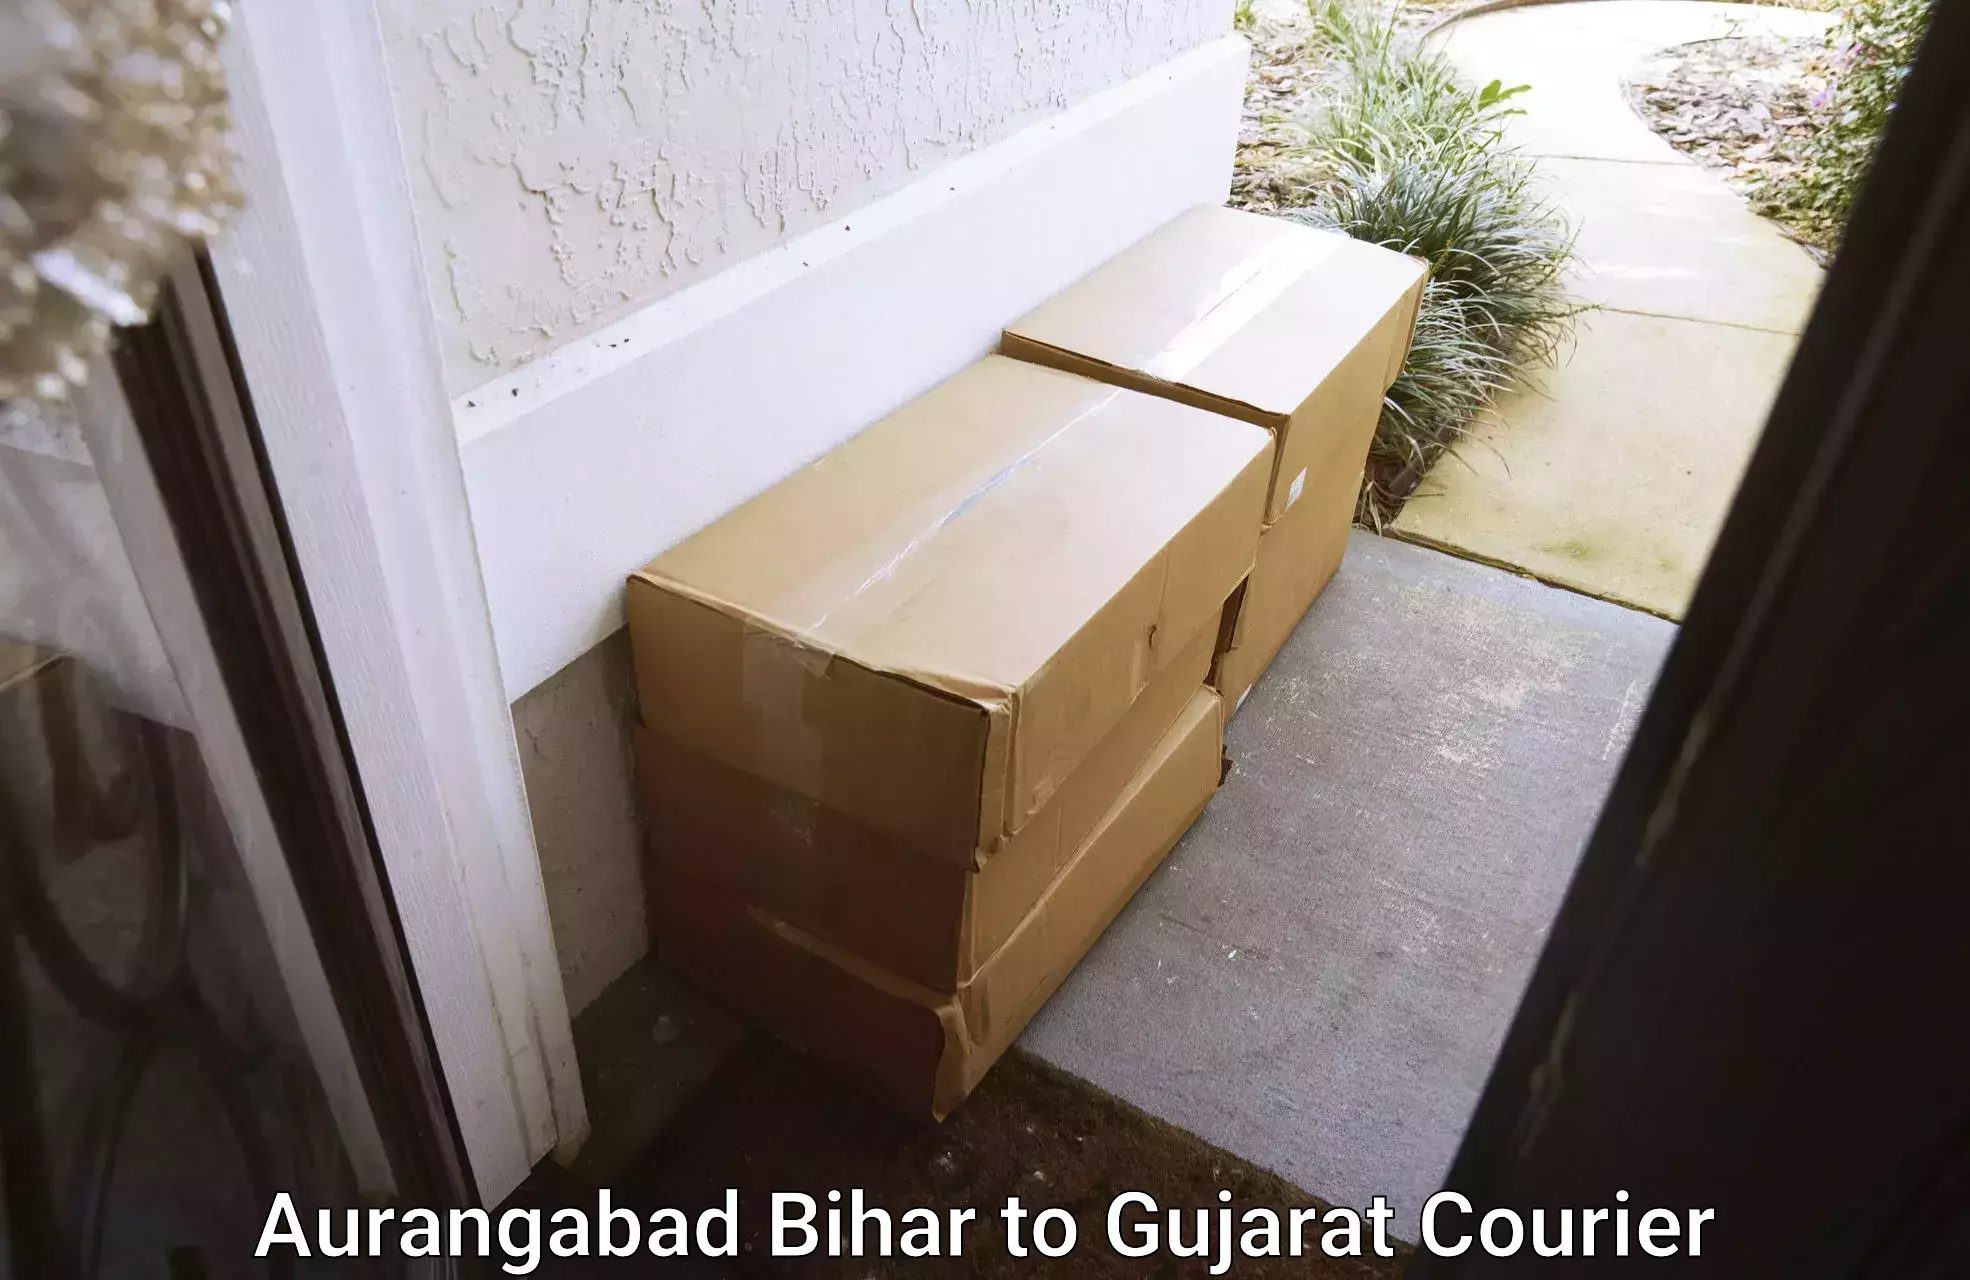 Furniture moving assistance Aurangabad Bihar to Anjar